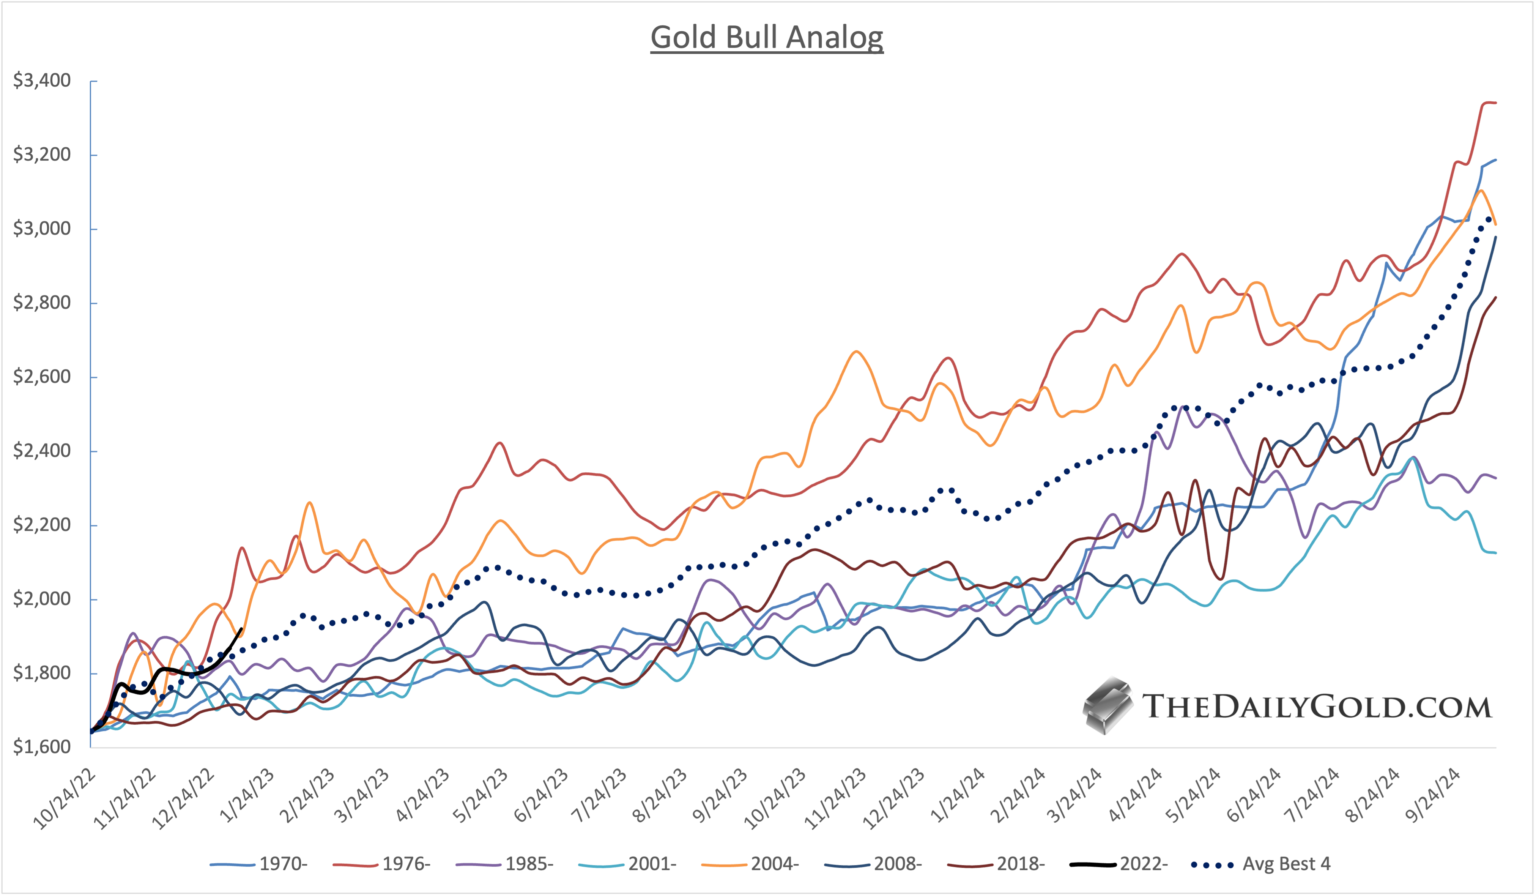 Gold Bull Analog